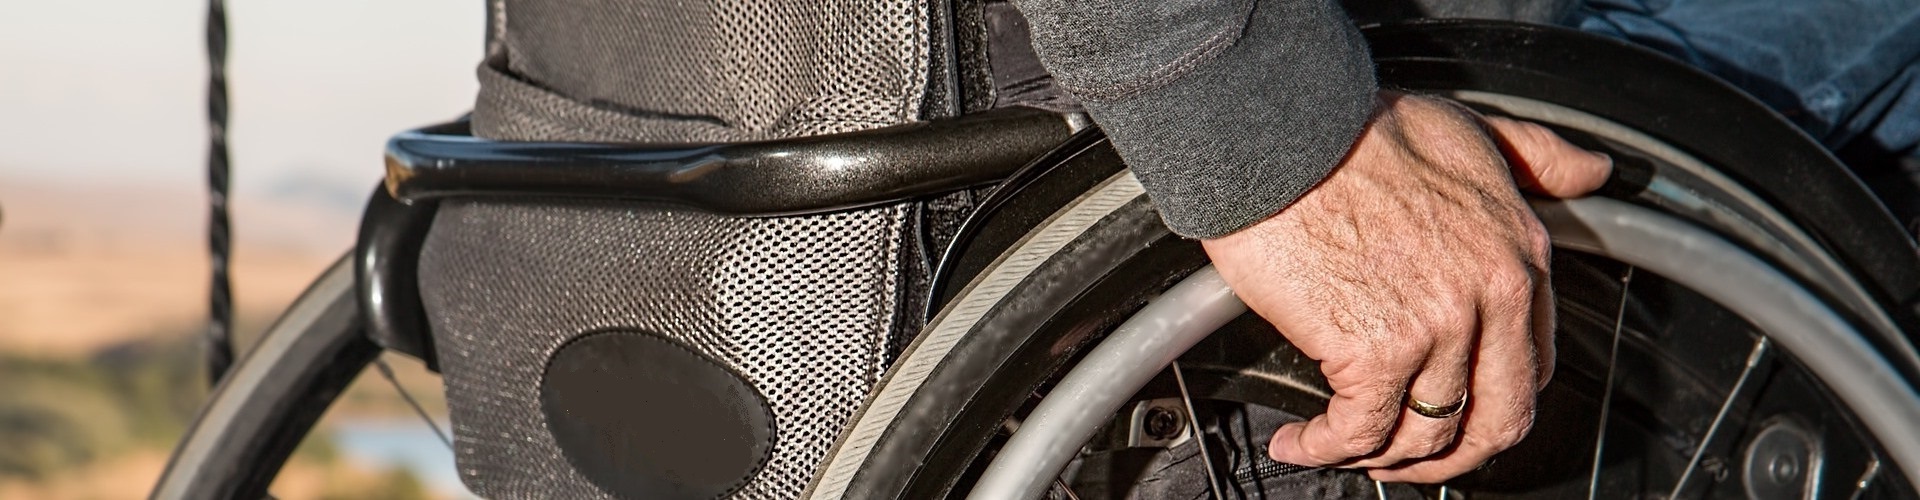 Seitenansicht eines Rollstuhls, den gerade der Rollstuhlfahrer anschiebt.